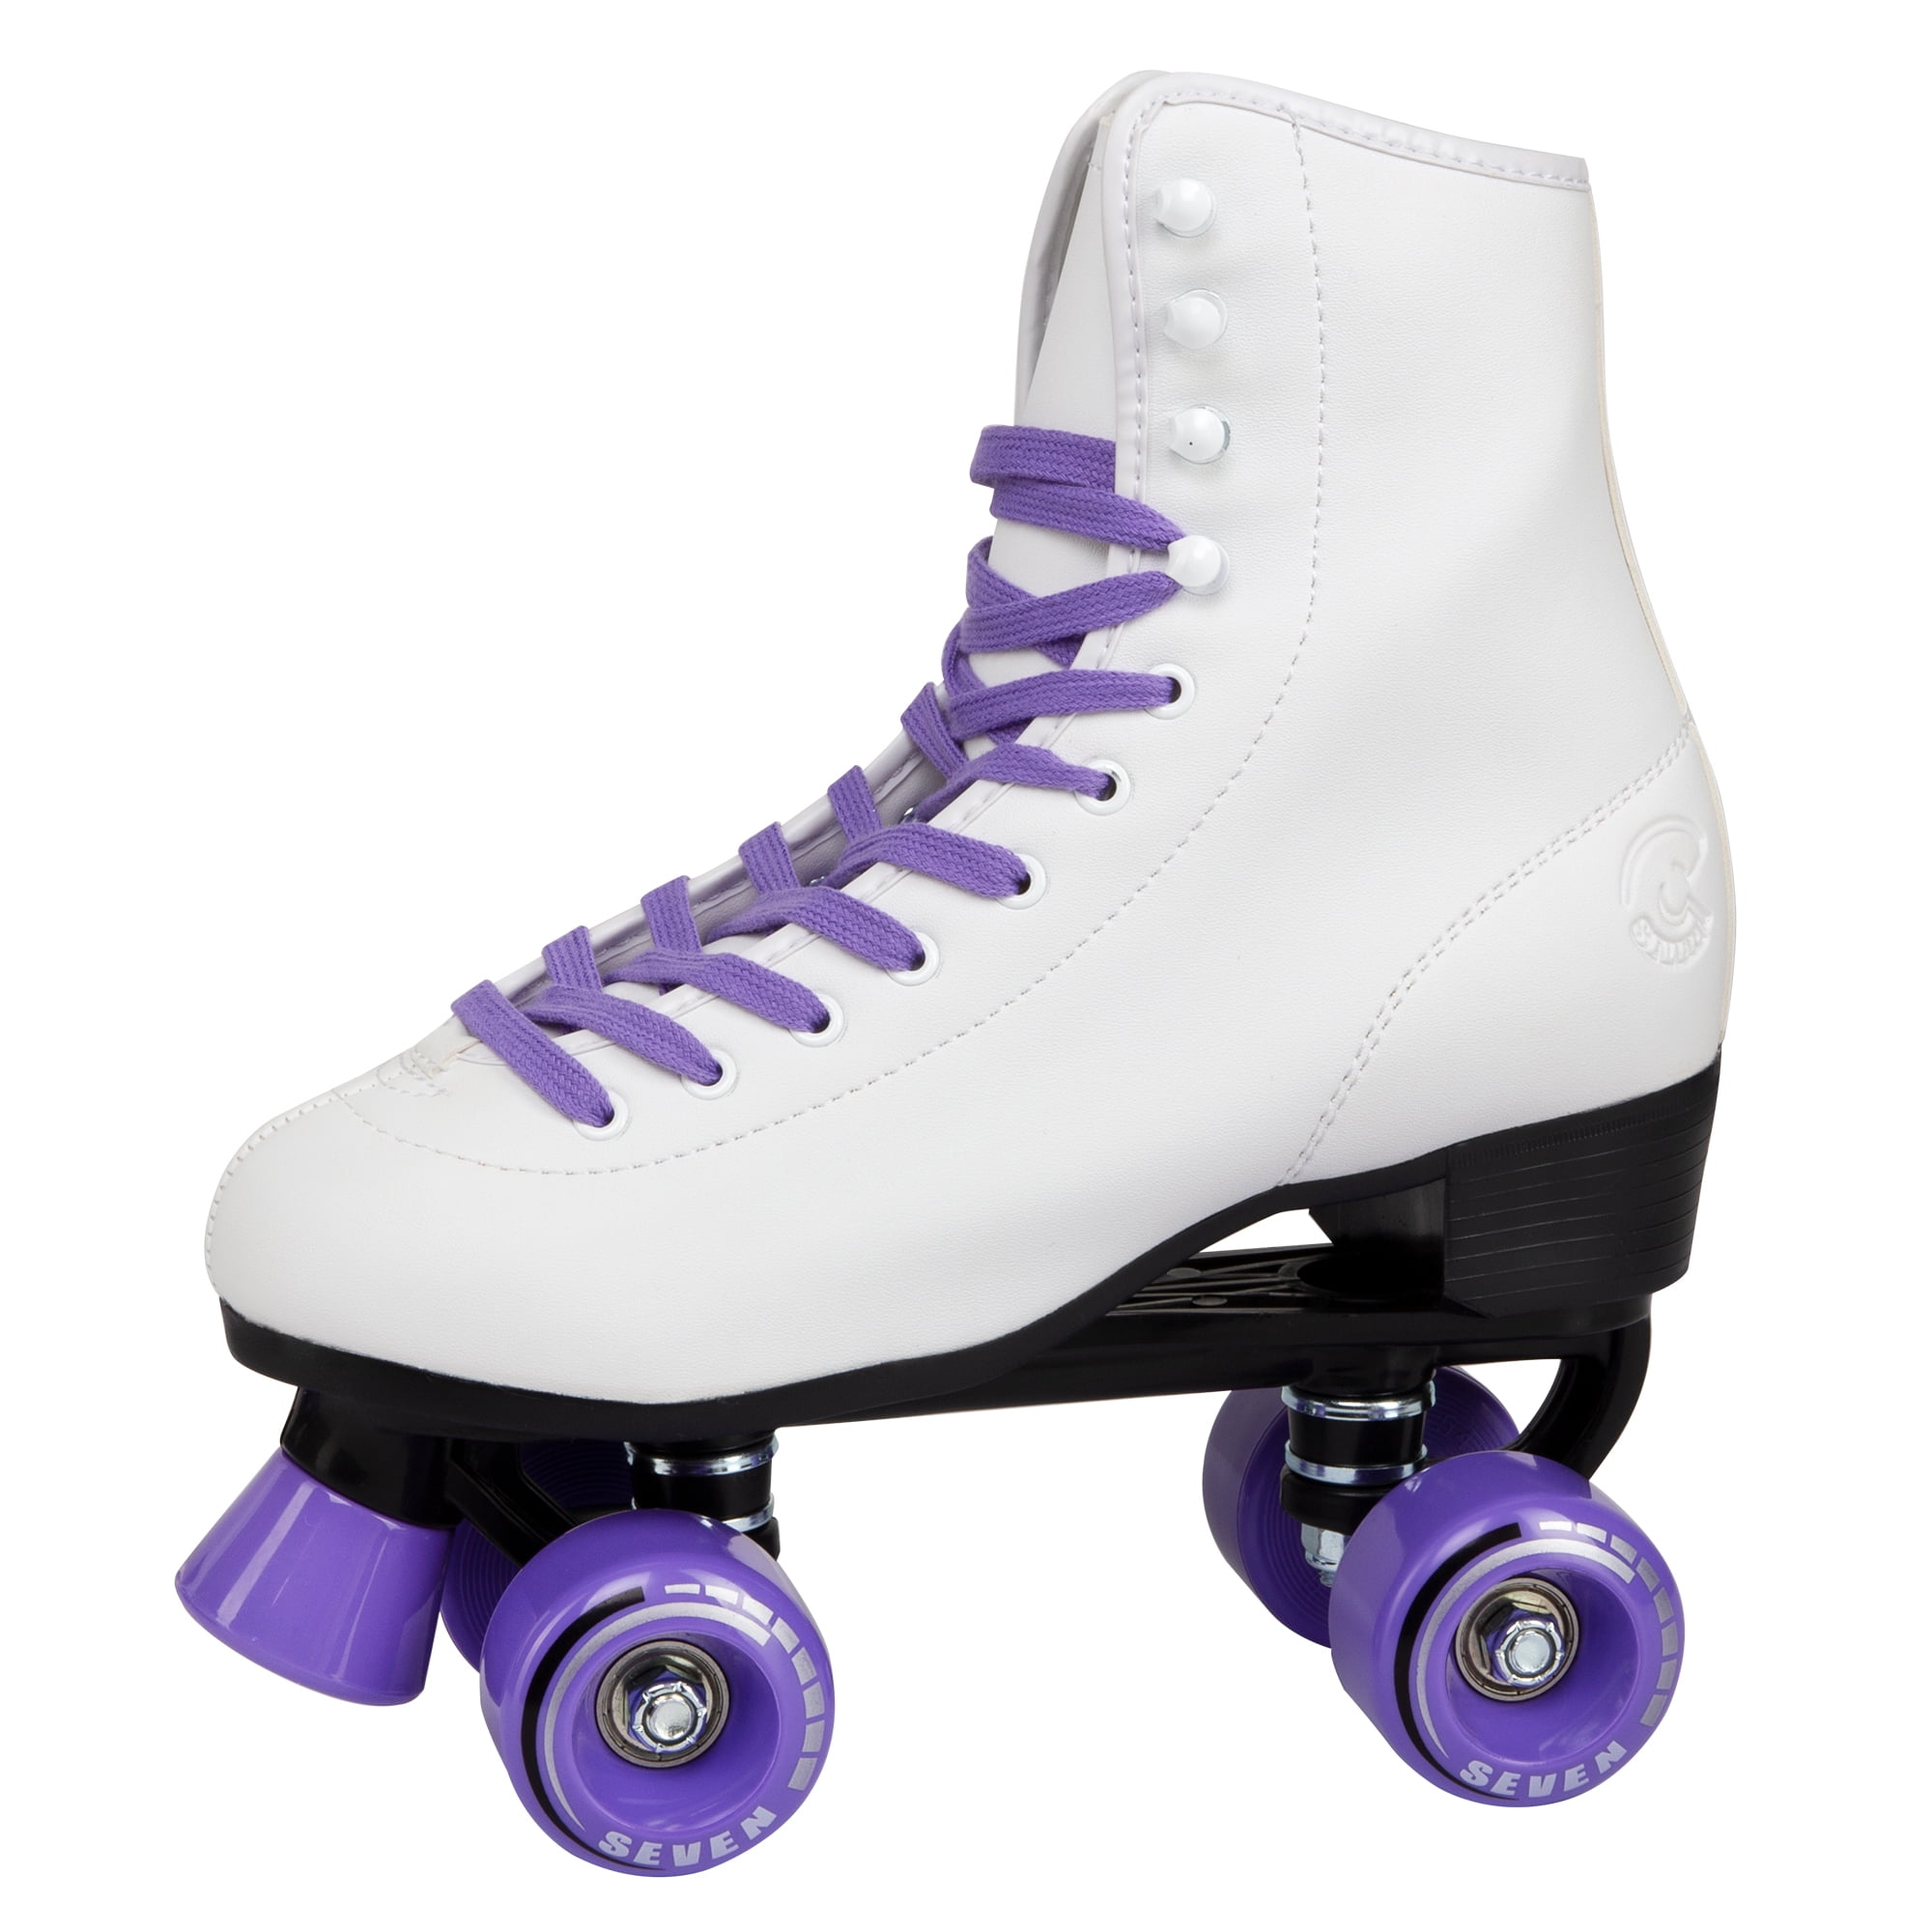 Details about   Quad Skates Purple Flower for Women Size 5 Adult 4-Wheels 